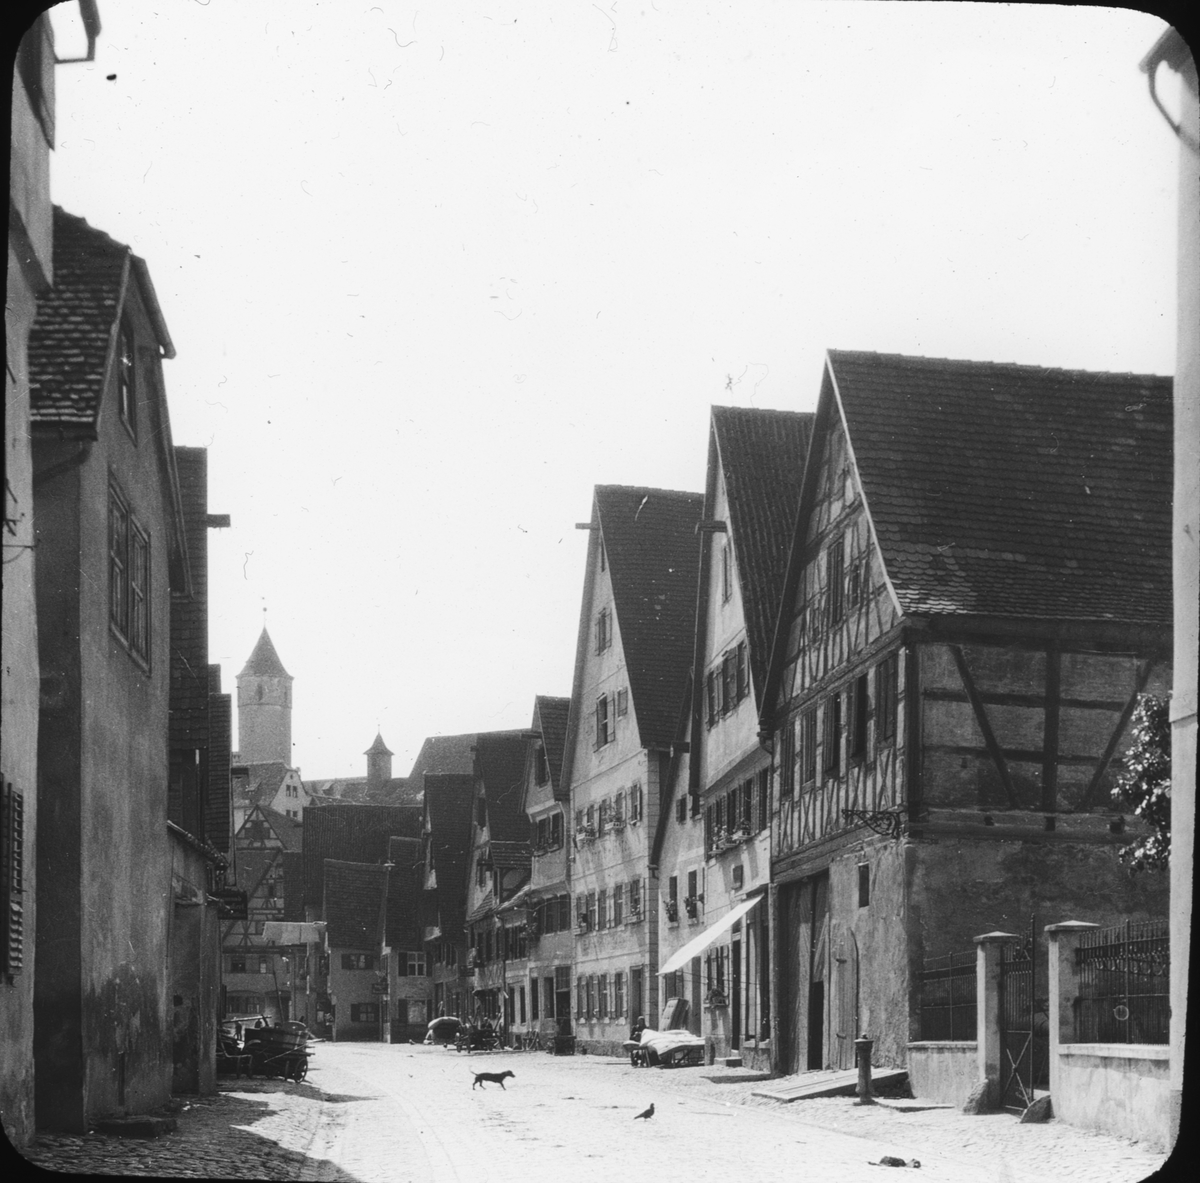 Skioptikonbild med motiv från Dinkelsbühl.
Bilden har förvarats i kartong märkt: Resan 1911. Dinkelsbühl 9. VII.